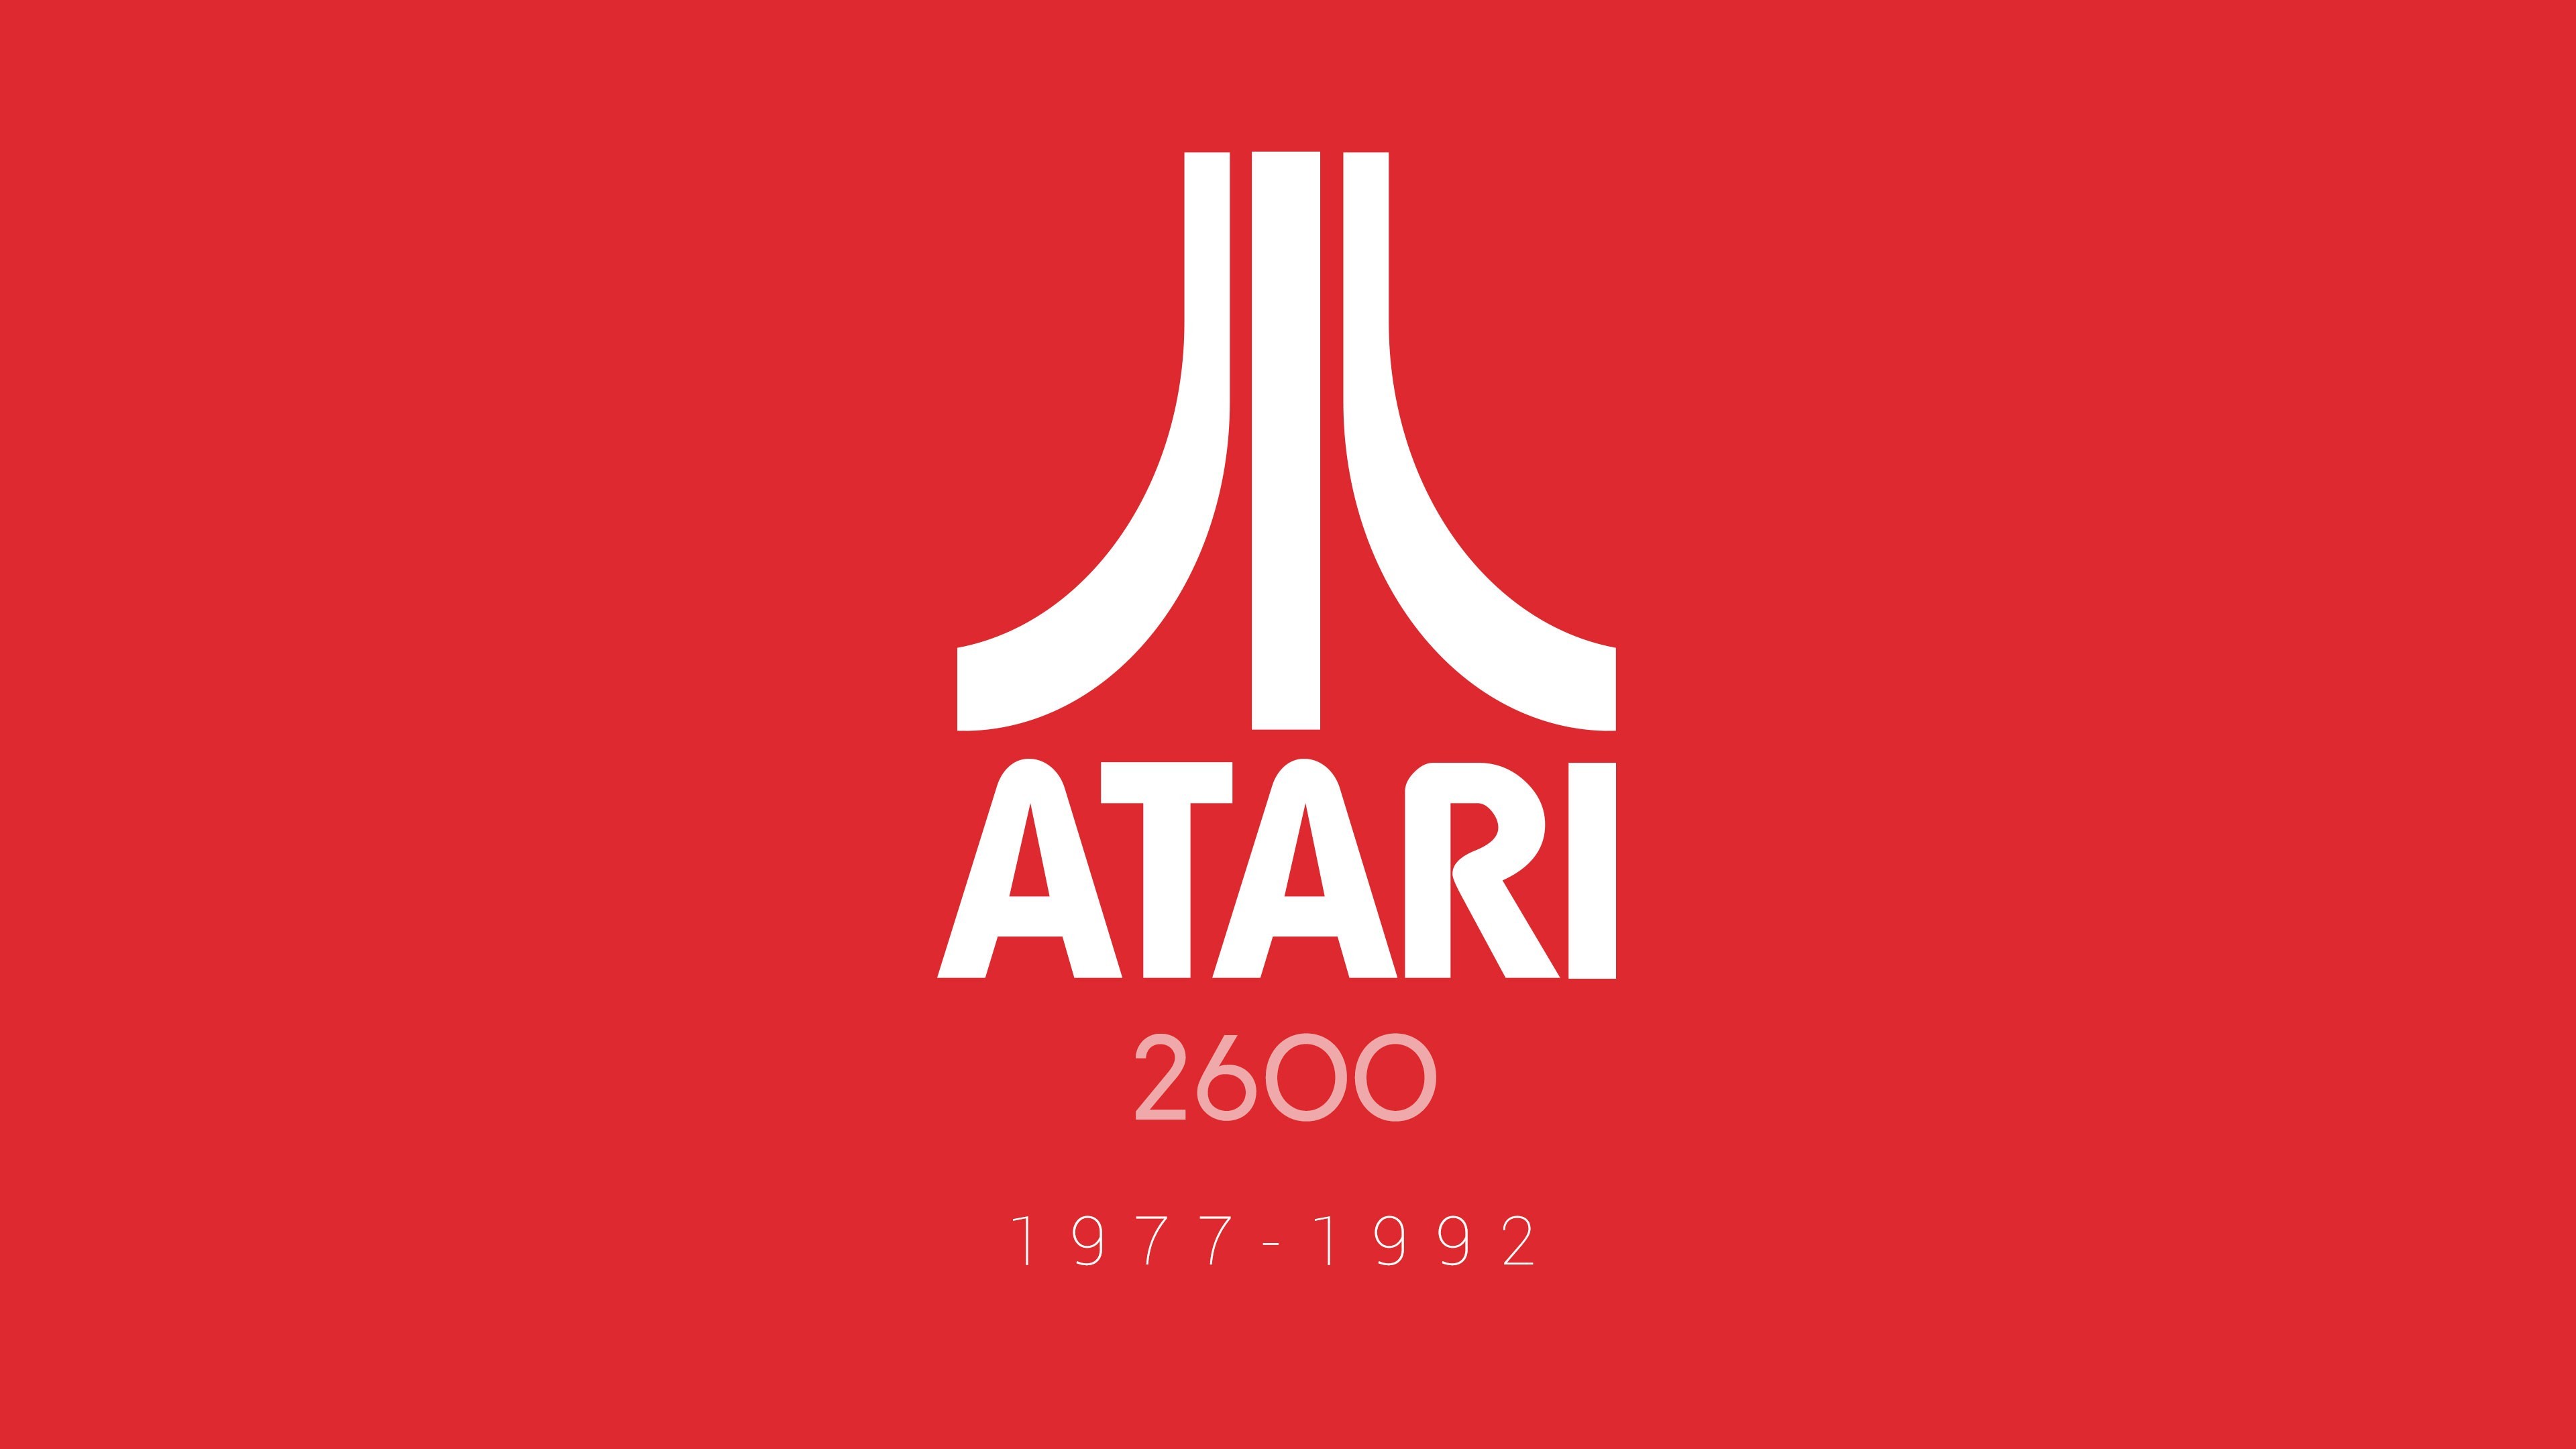 3840x2160 Atari, Video Games, Logo, Red, 2600 Wallpapers HD / Desktop And ..